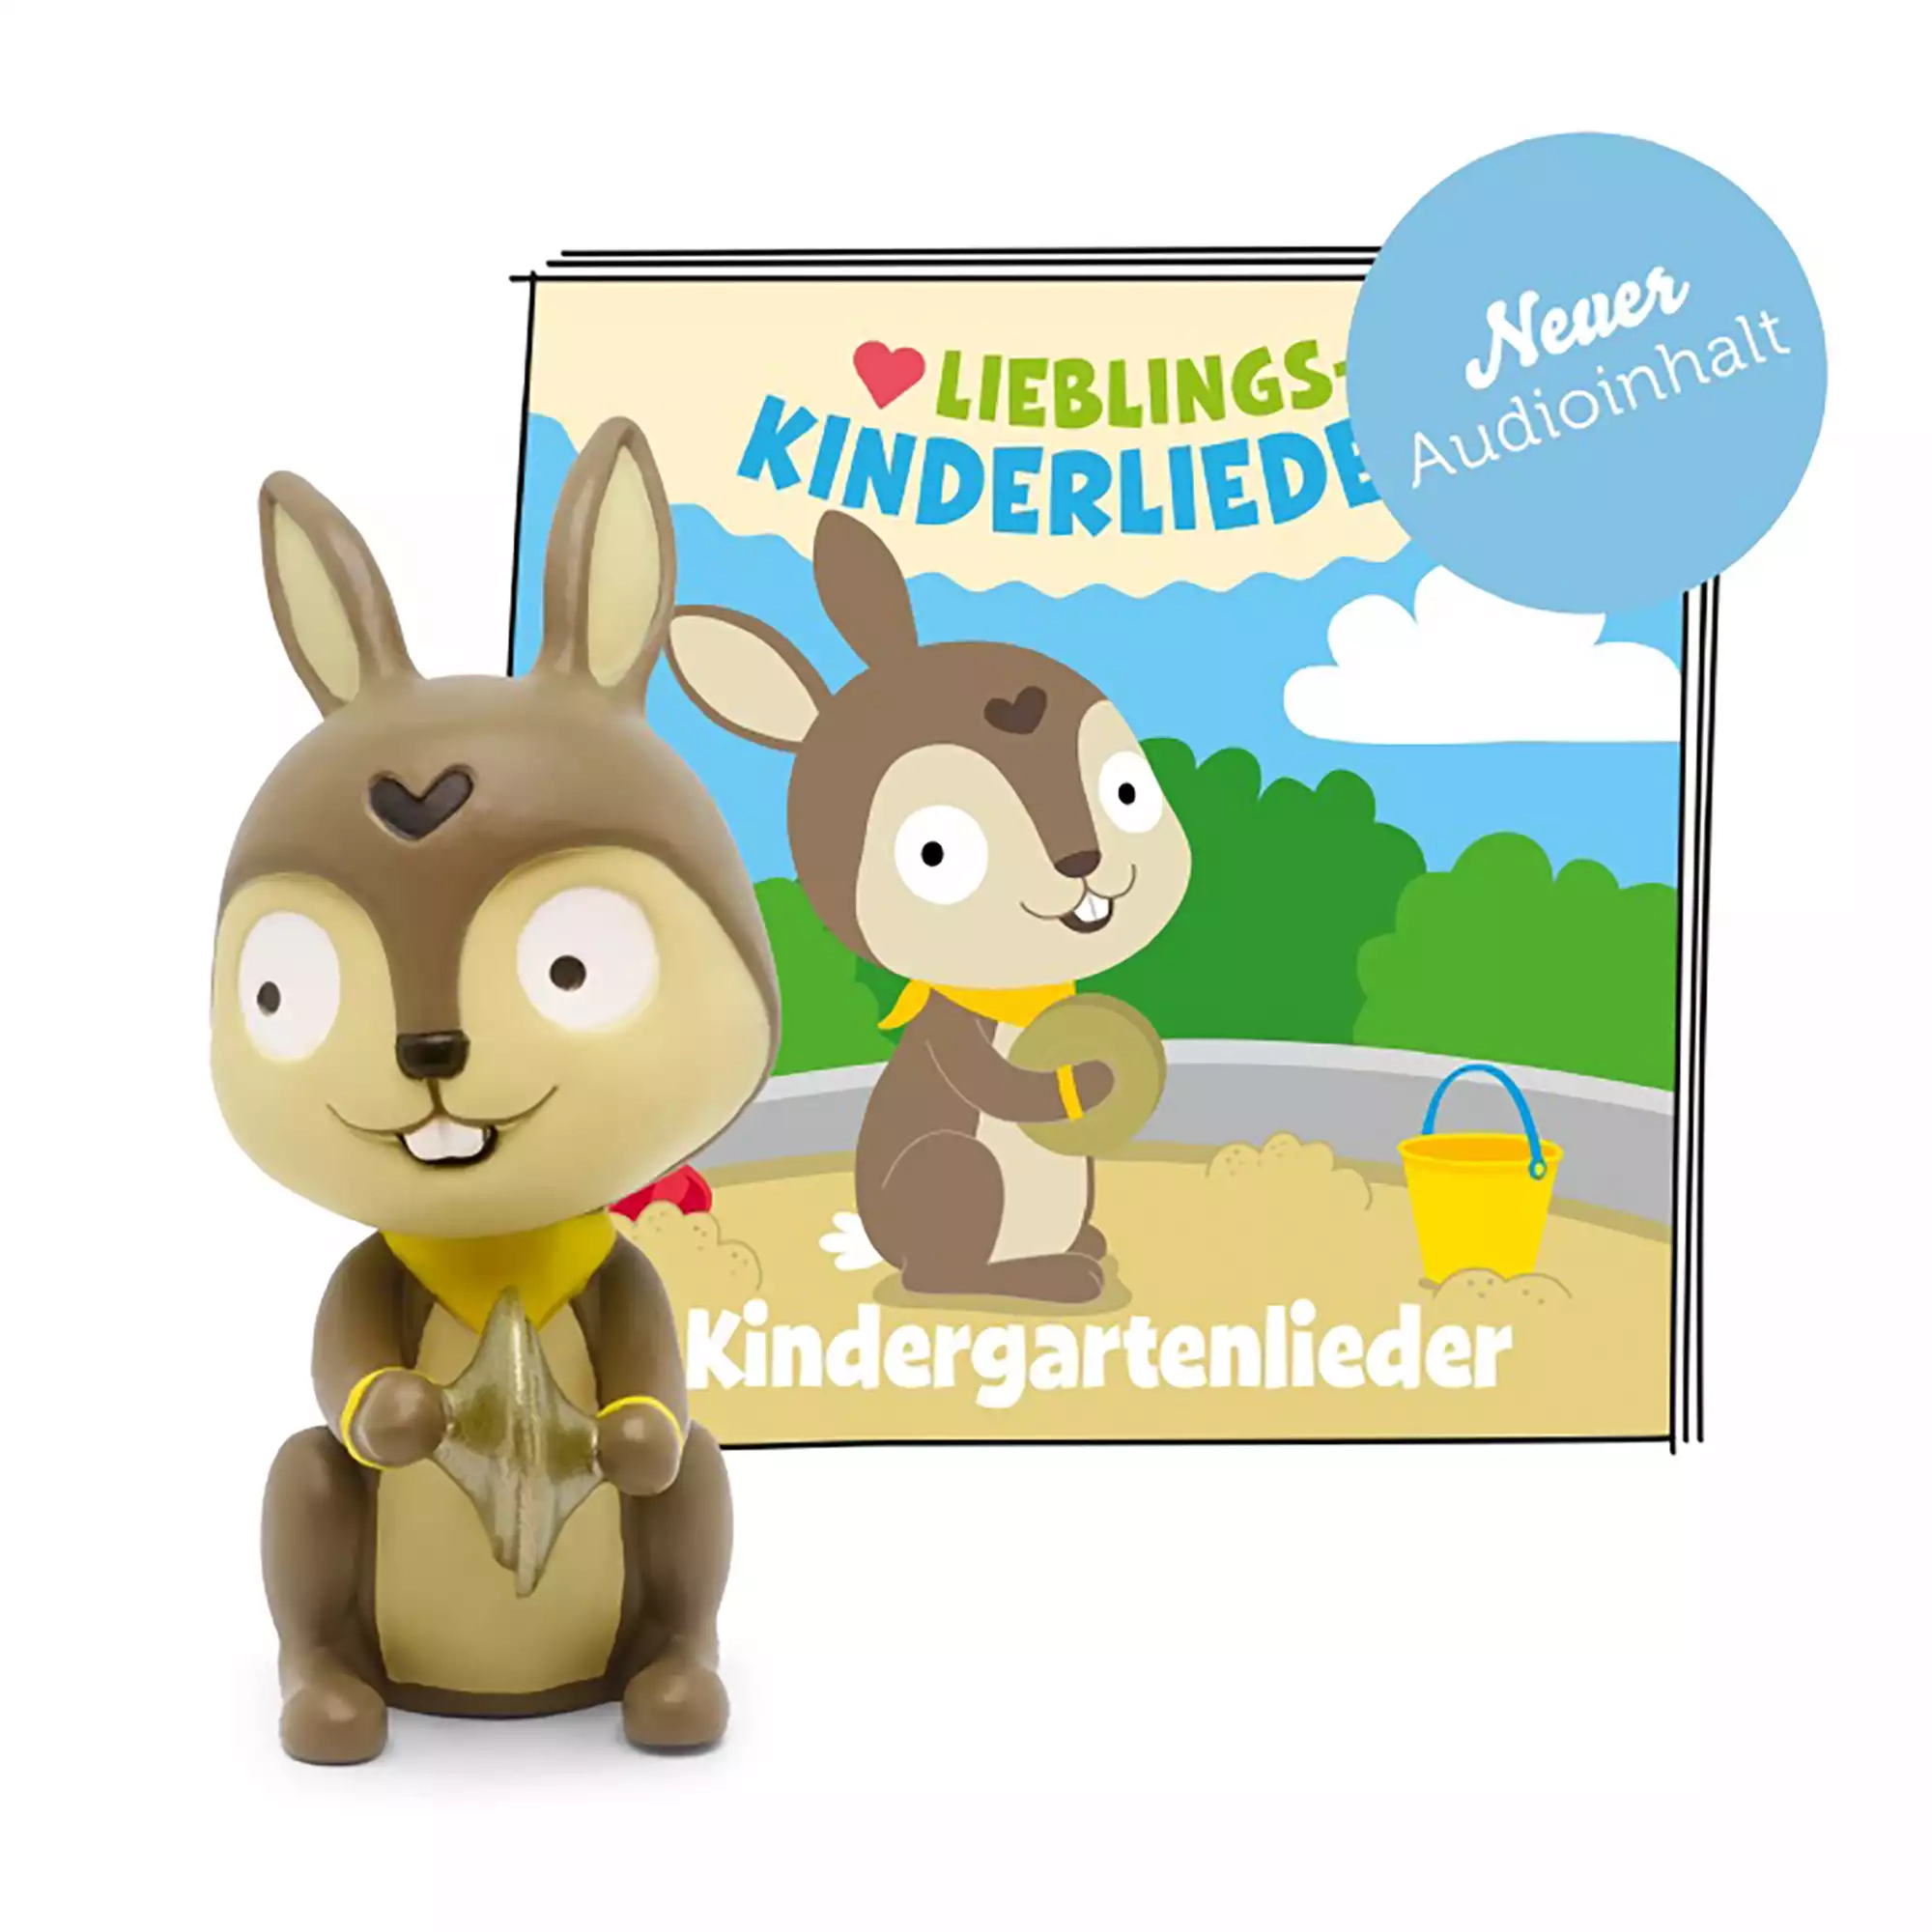 Lieblings-Kinderlieder - Kindergartenlieder tonies 2000583125006 1